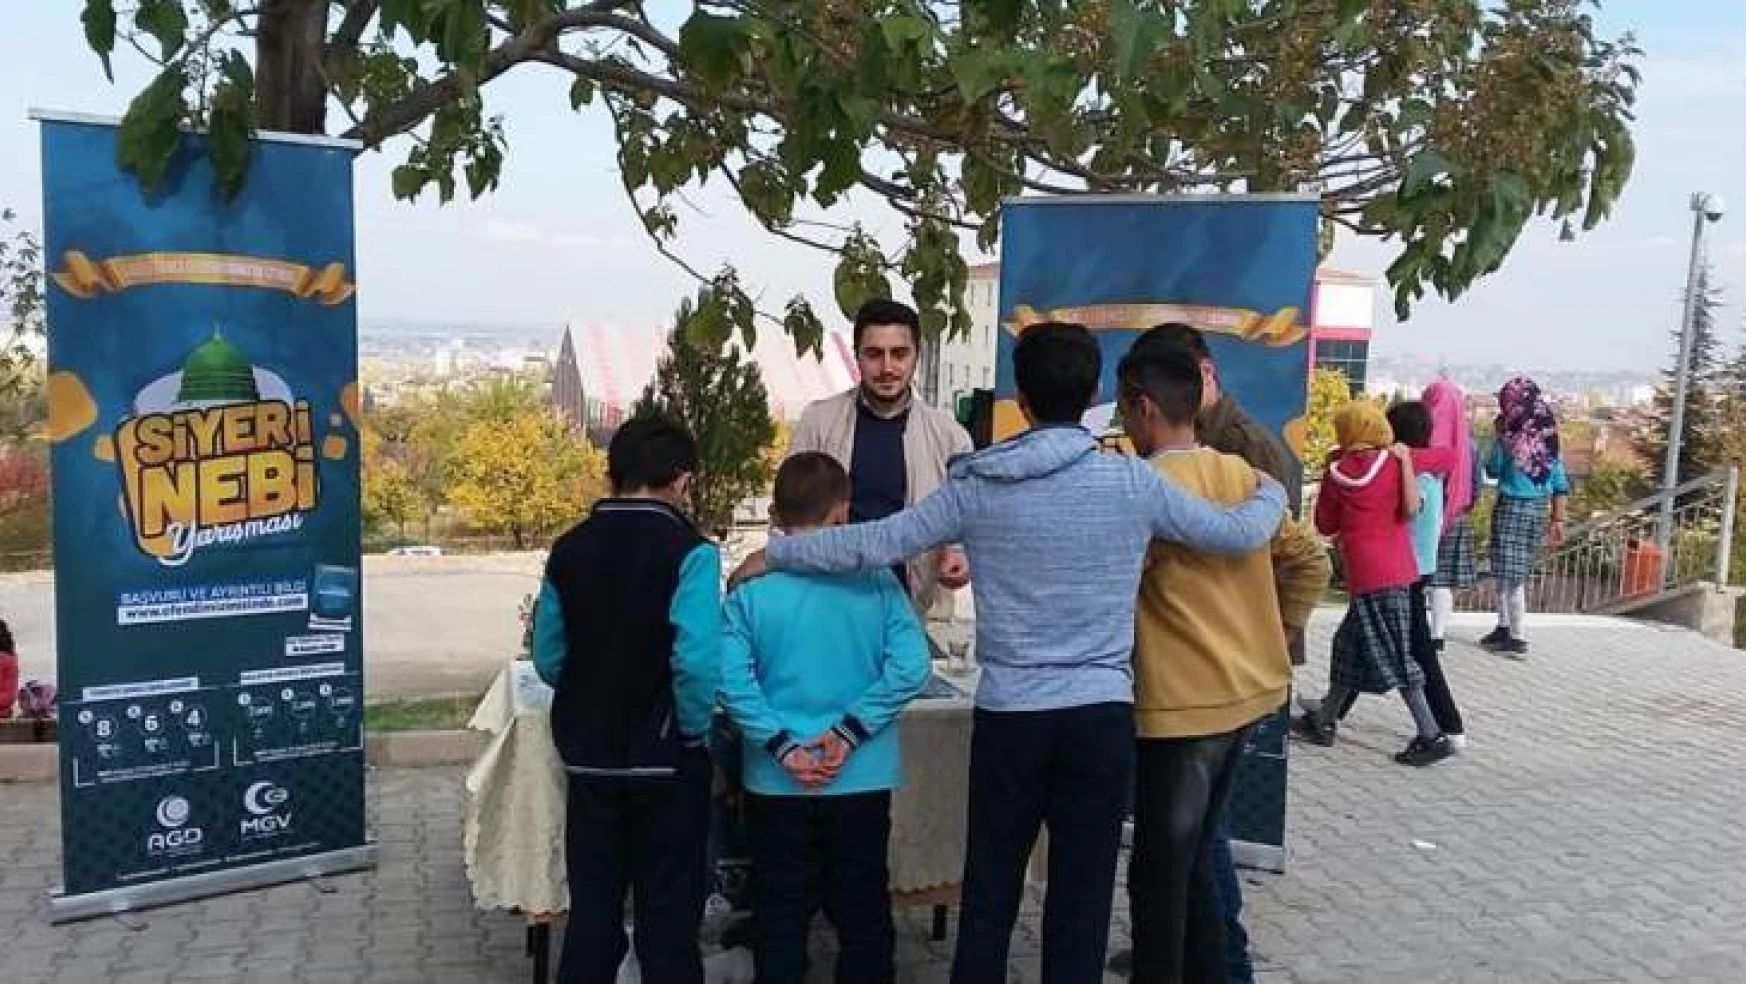 Anadolu Gençlik Derneği Siyer-i Nebi sınavı bu yıl 15 Aralık'ta.